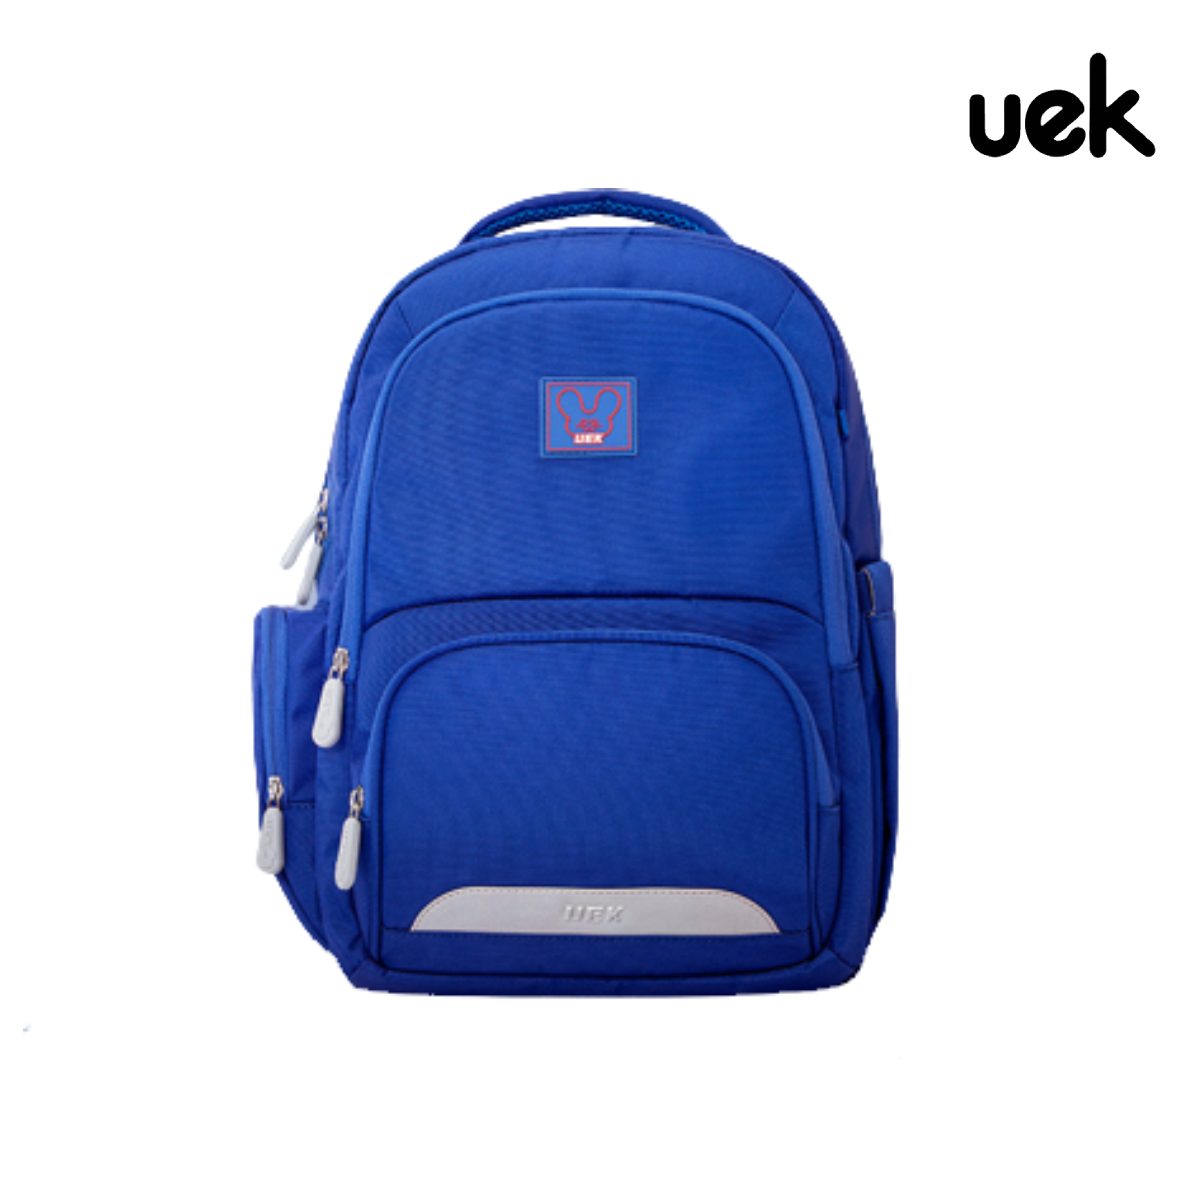 กระเป๋าเป้นักเรียน รุ่น Magic สีน้ำเงิน (XL)